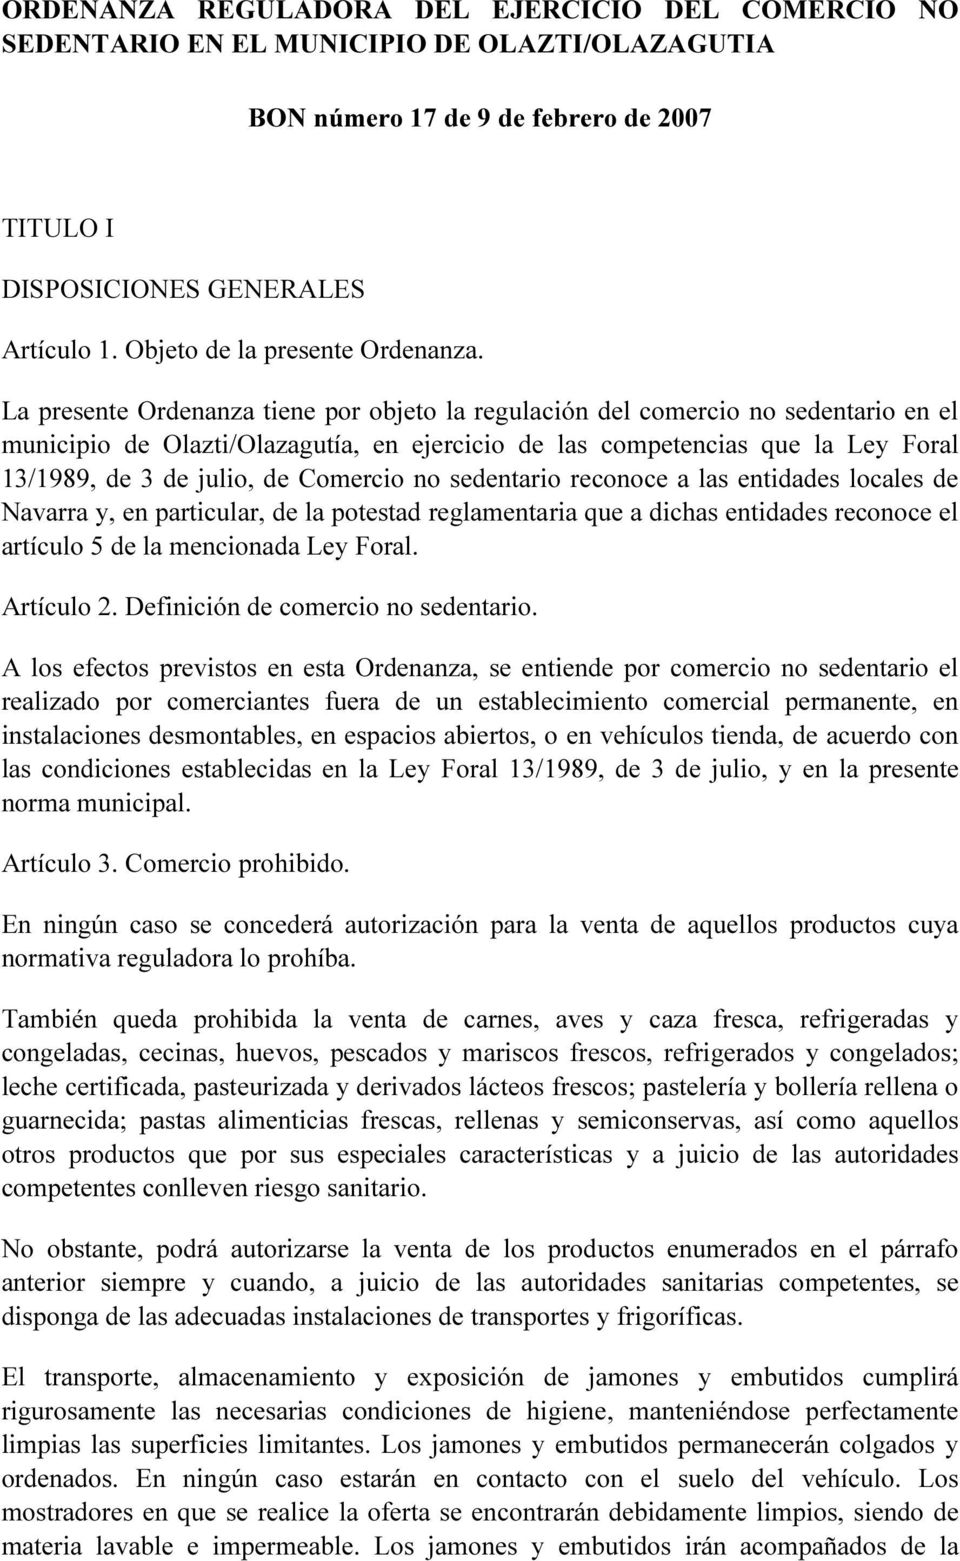 La presente Ordenanza tiene por objeto la regulación del comercio no sedentario en el municipio de Olazti/Olazagutía, en ejercicio de las competencias que la Ley Foral 13/1989, de 3 de julio, de